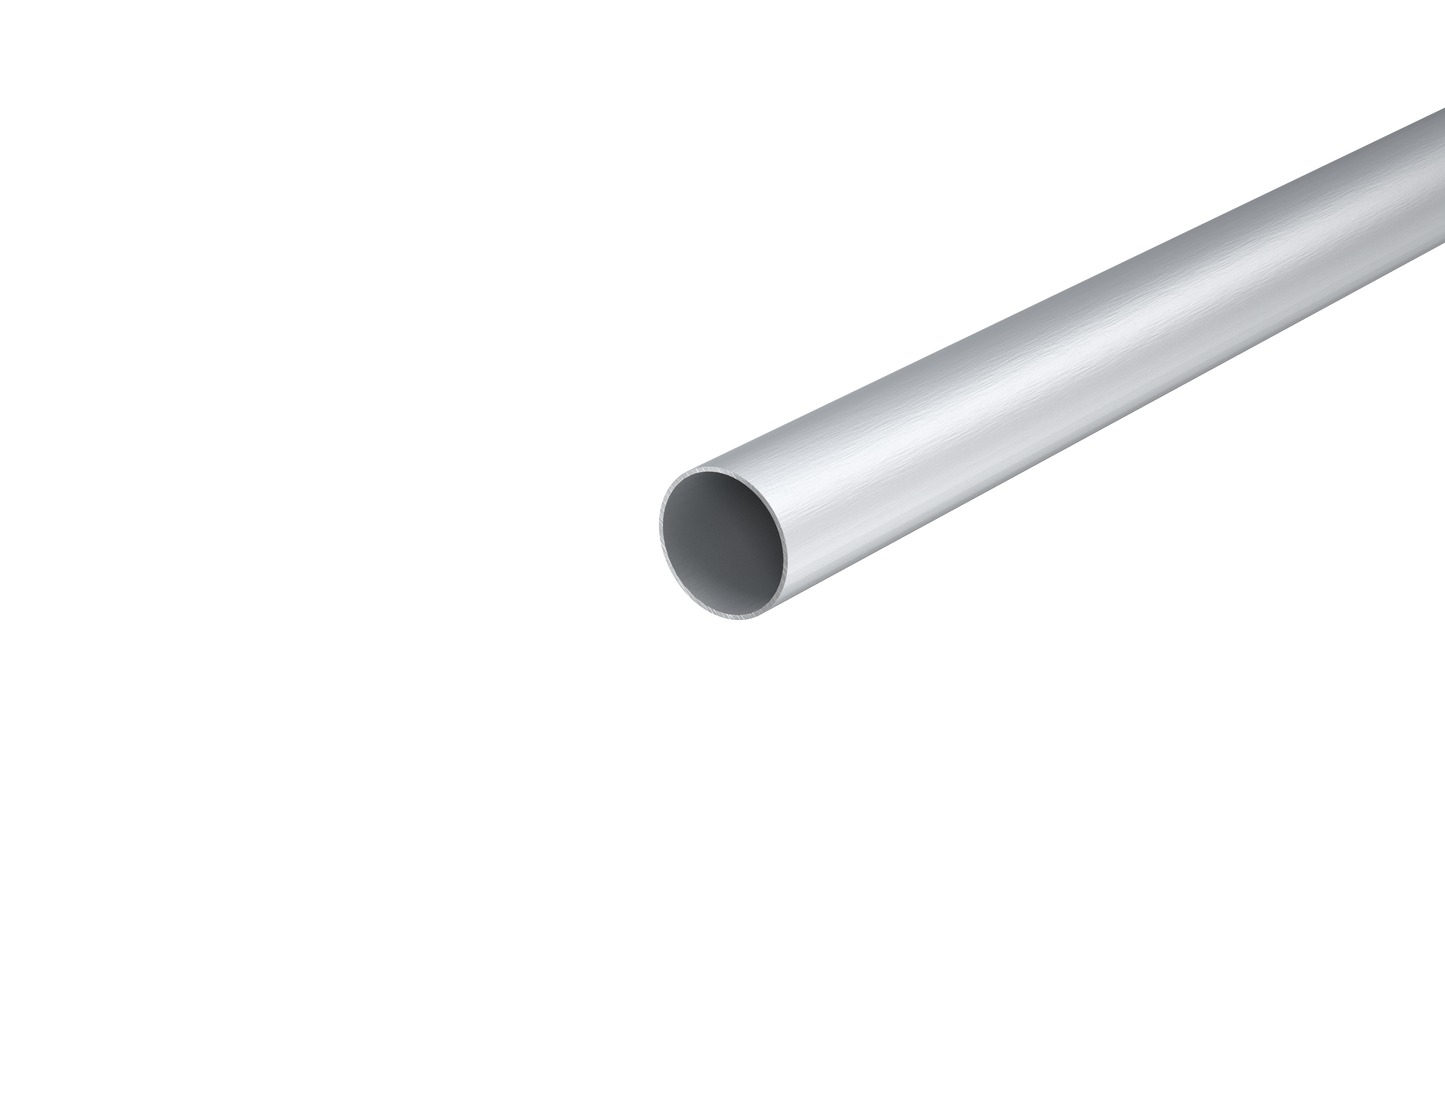 1-1/4" Aluminum Round Telescopic Tube